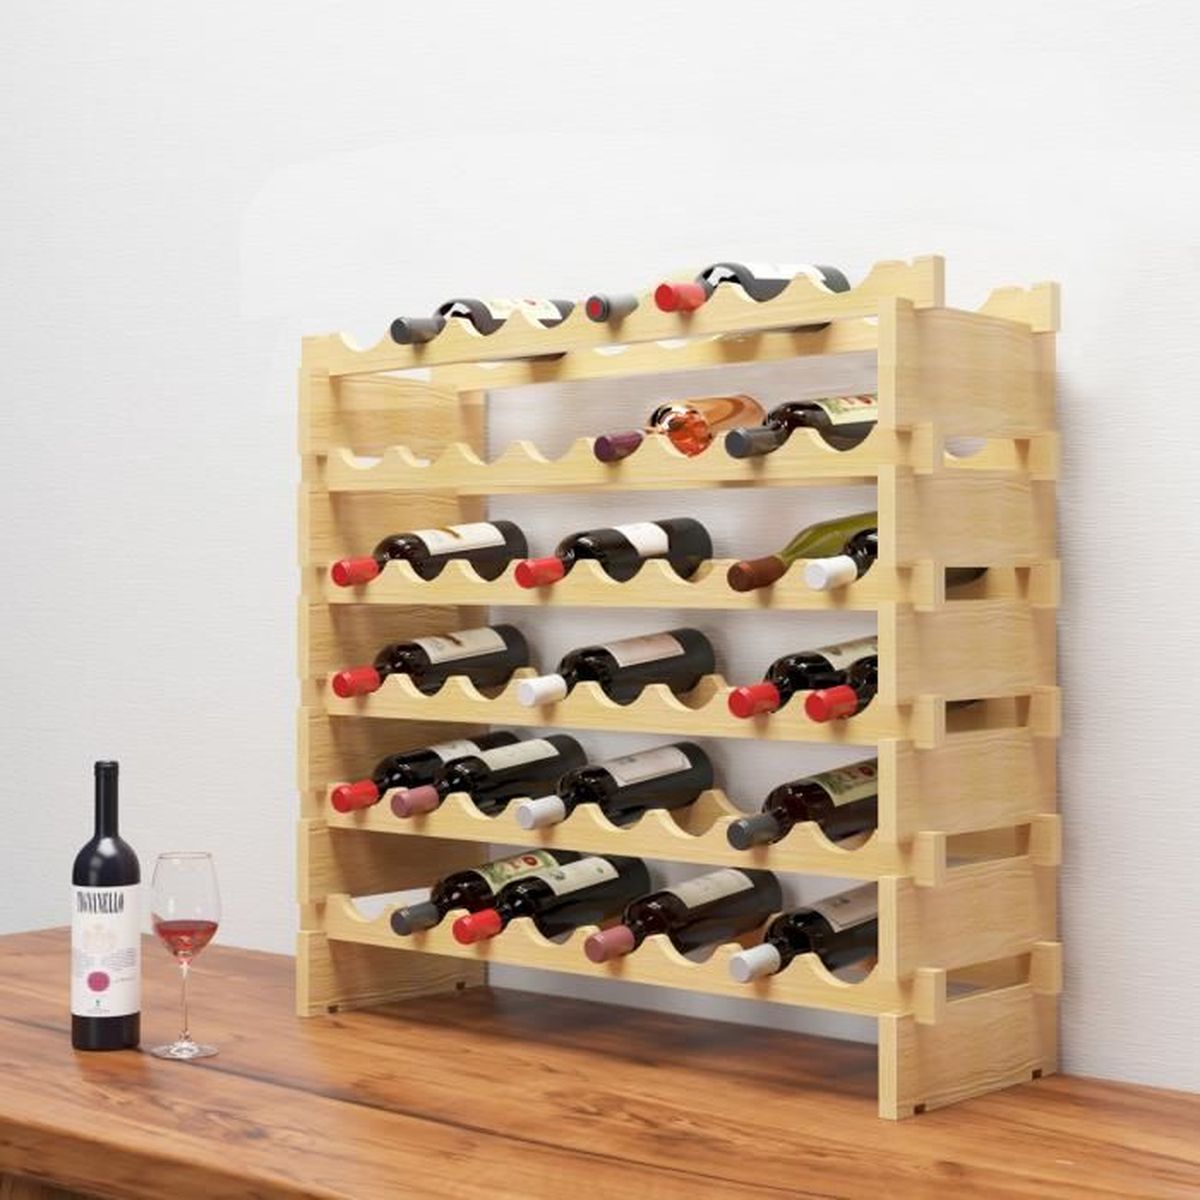 ▷ Casier en bois pour ranger les bouteilles de vin